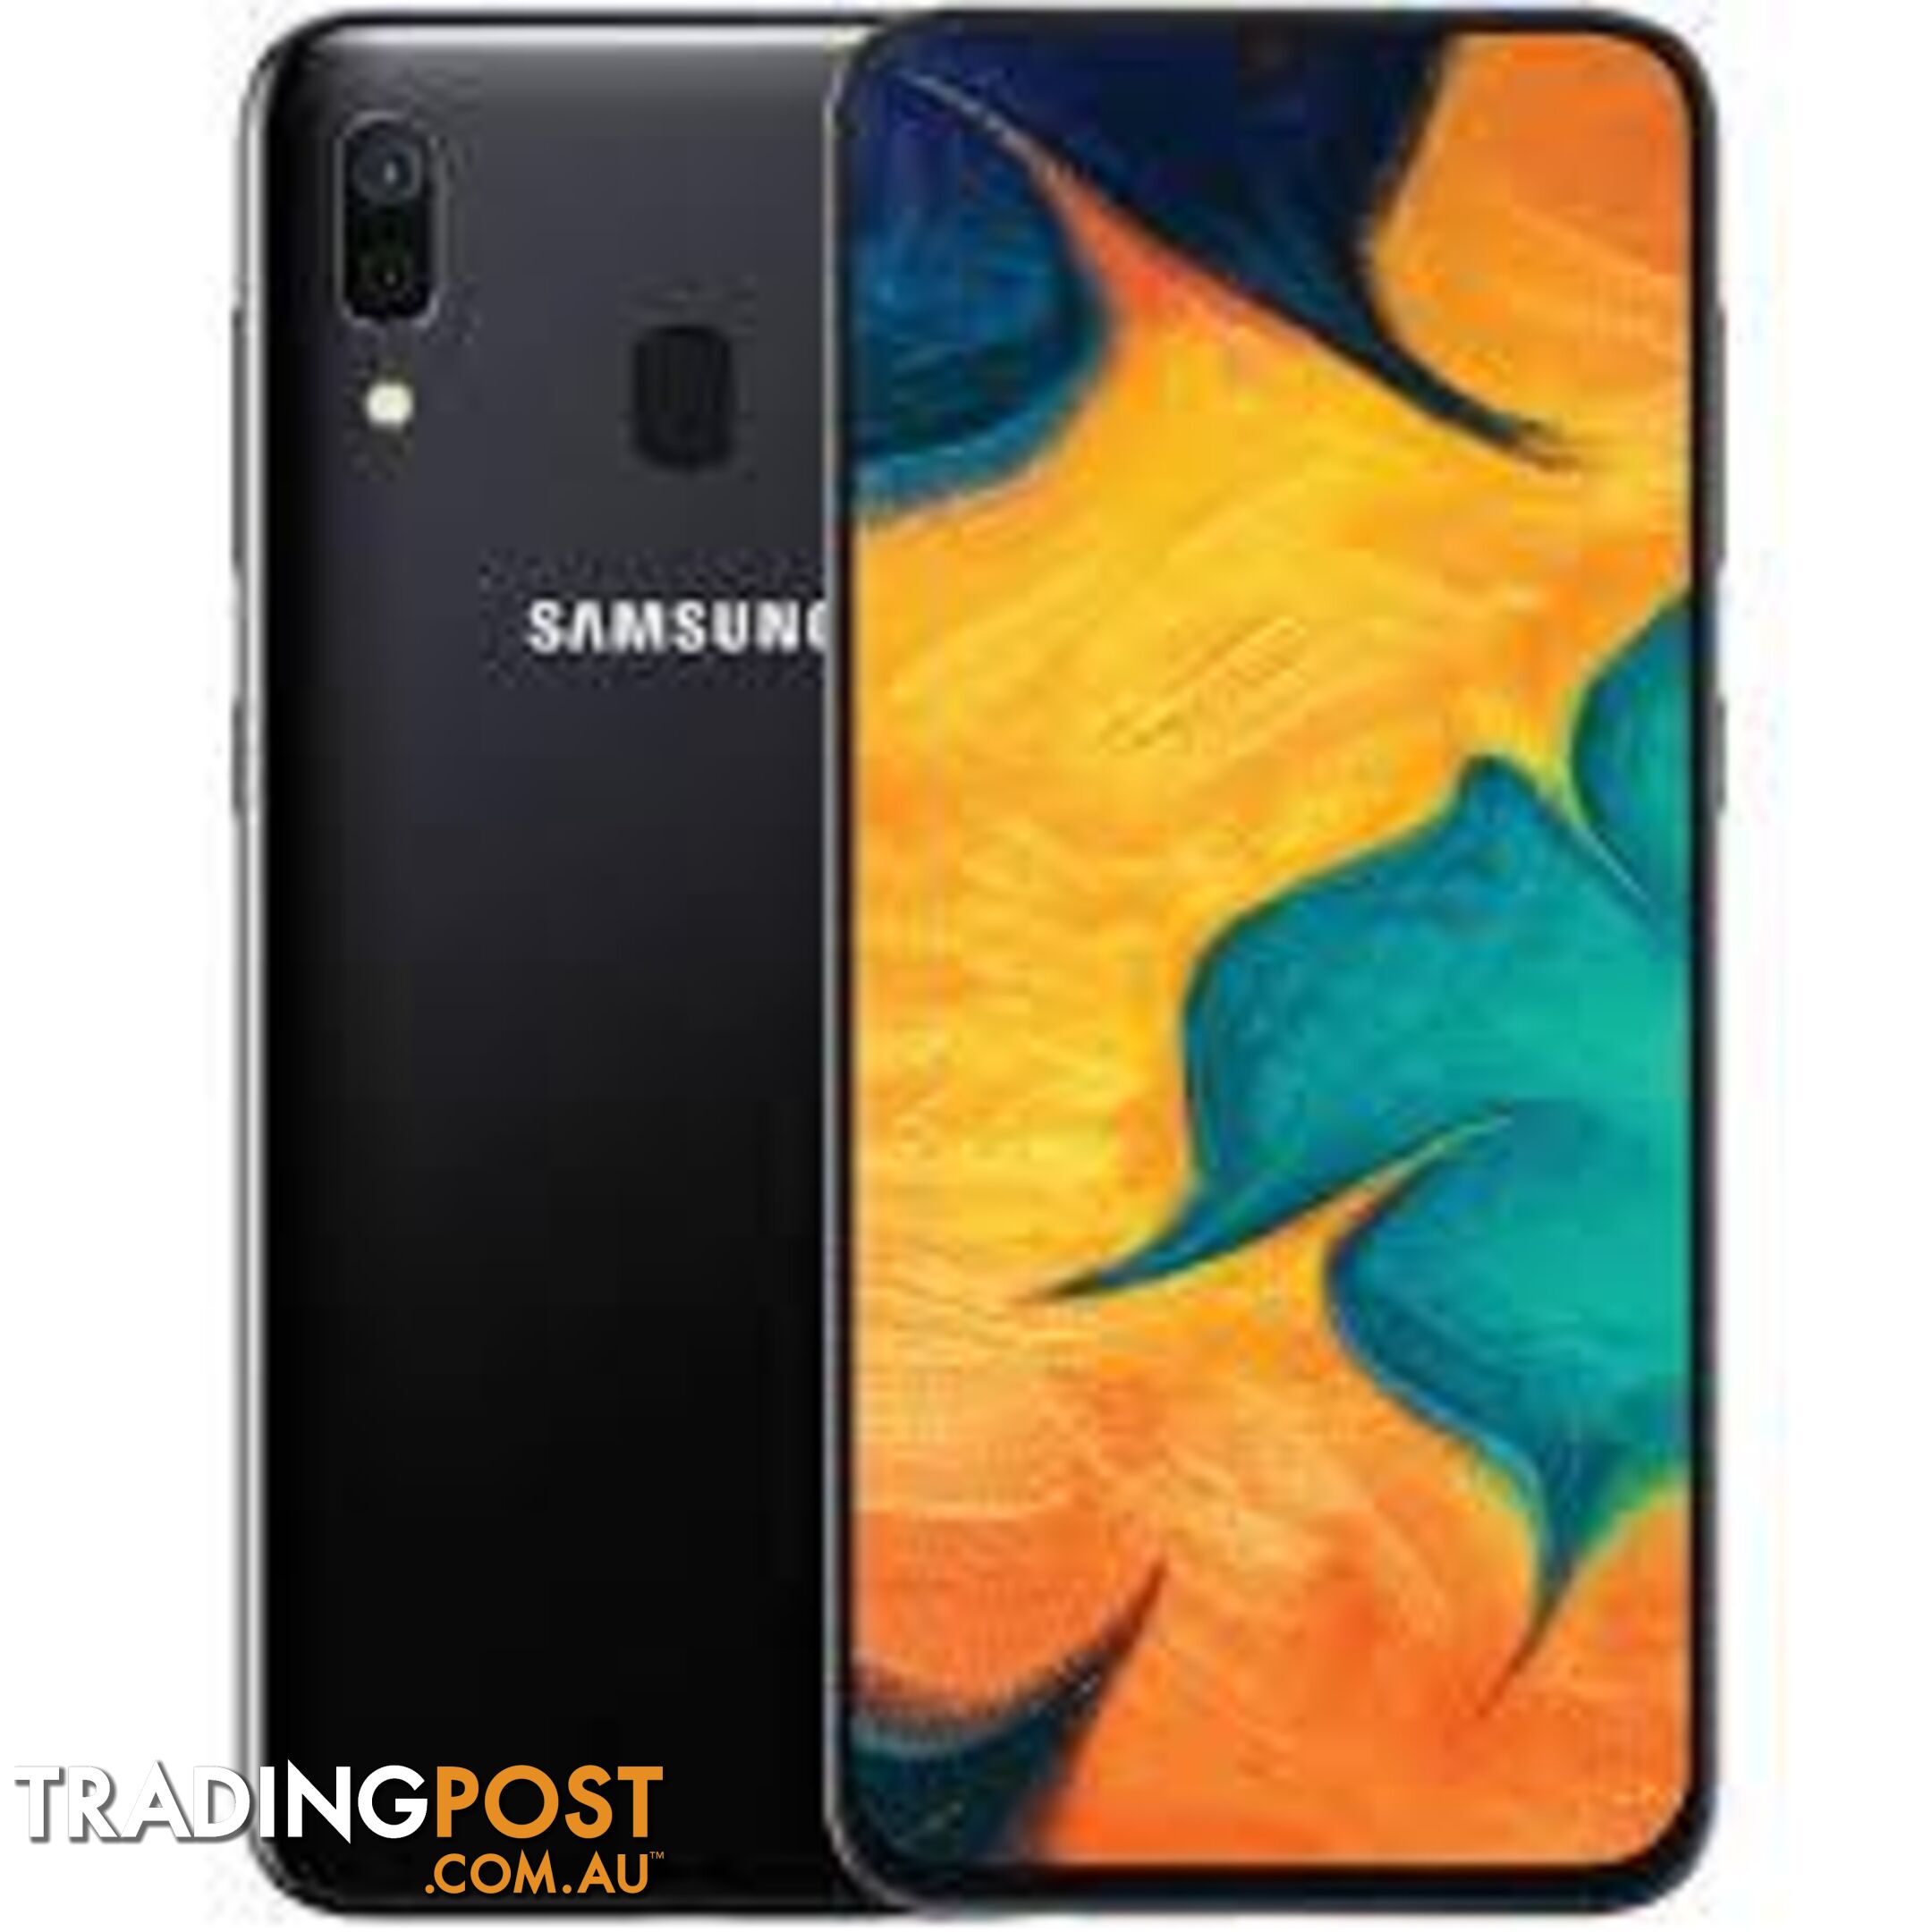 Samsung Galaxy A30 32GB - 6F17F9 - mobile phone